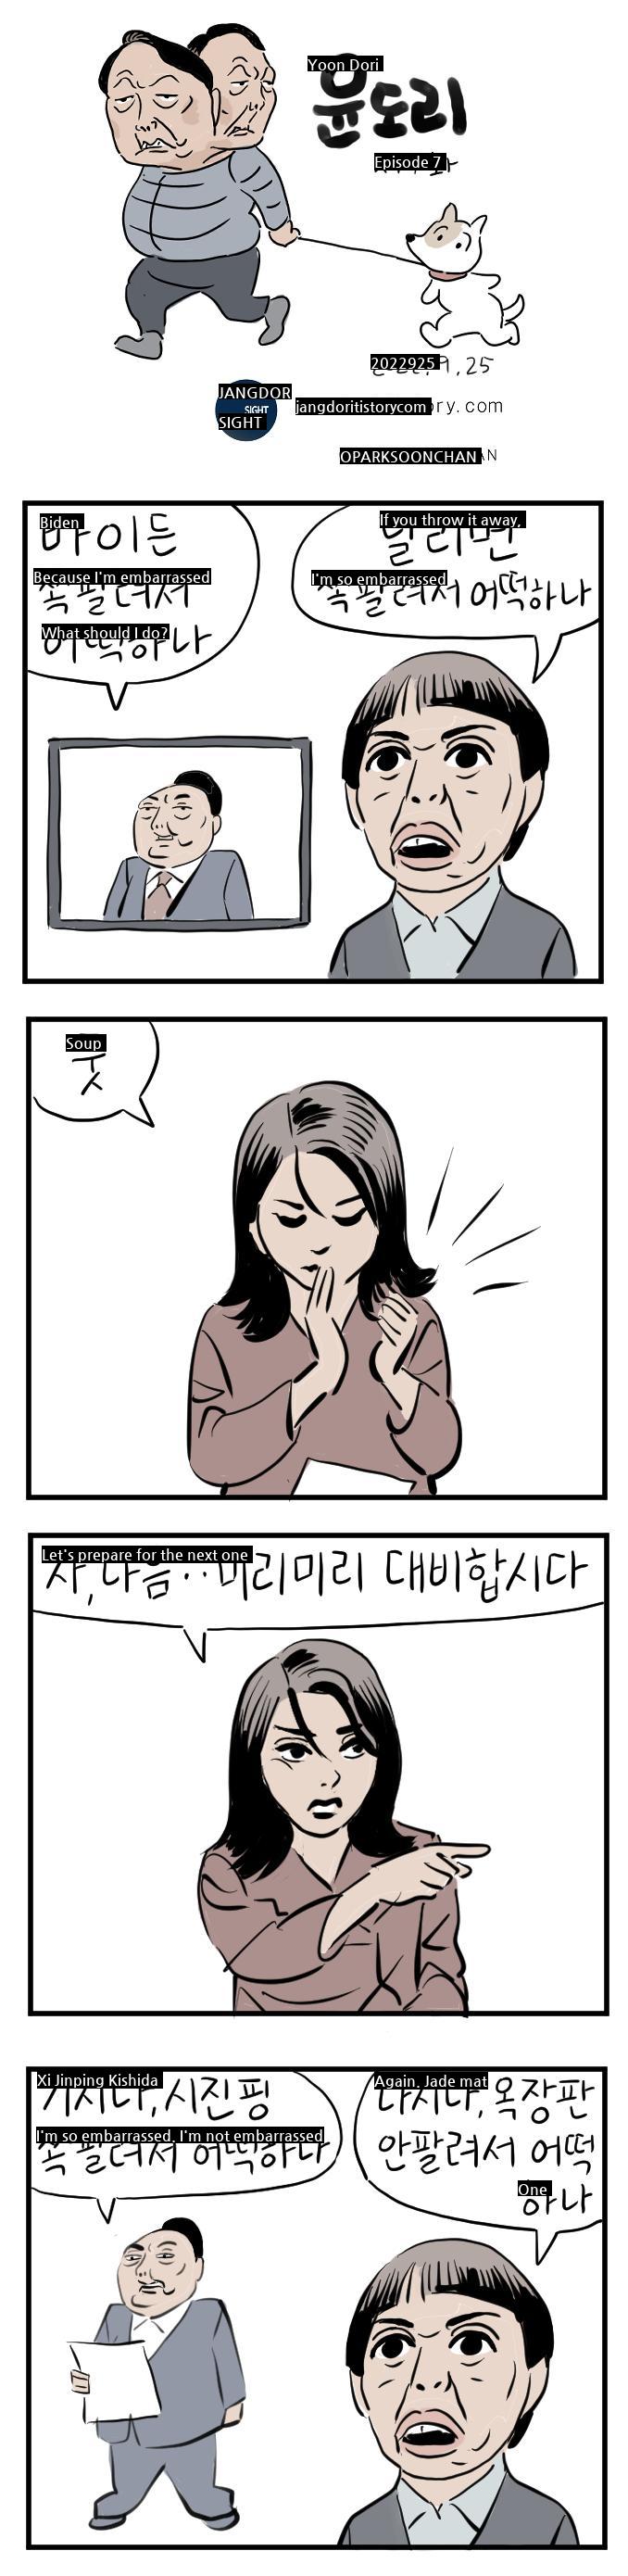 Yoon Dori, episode 7